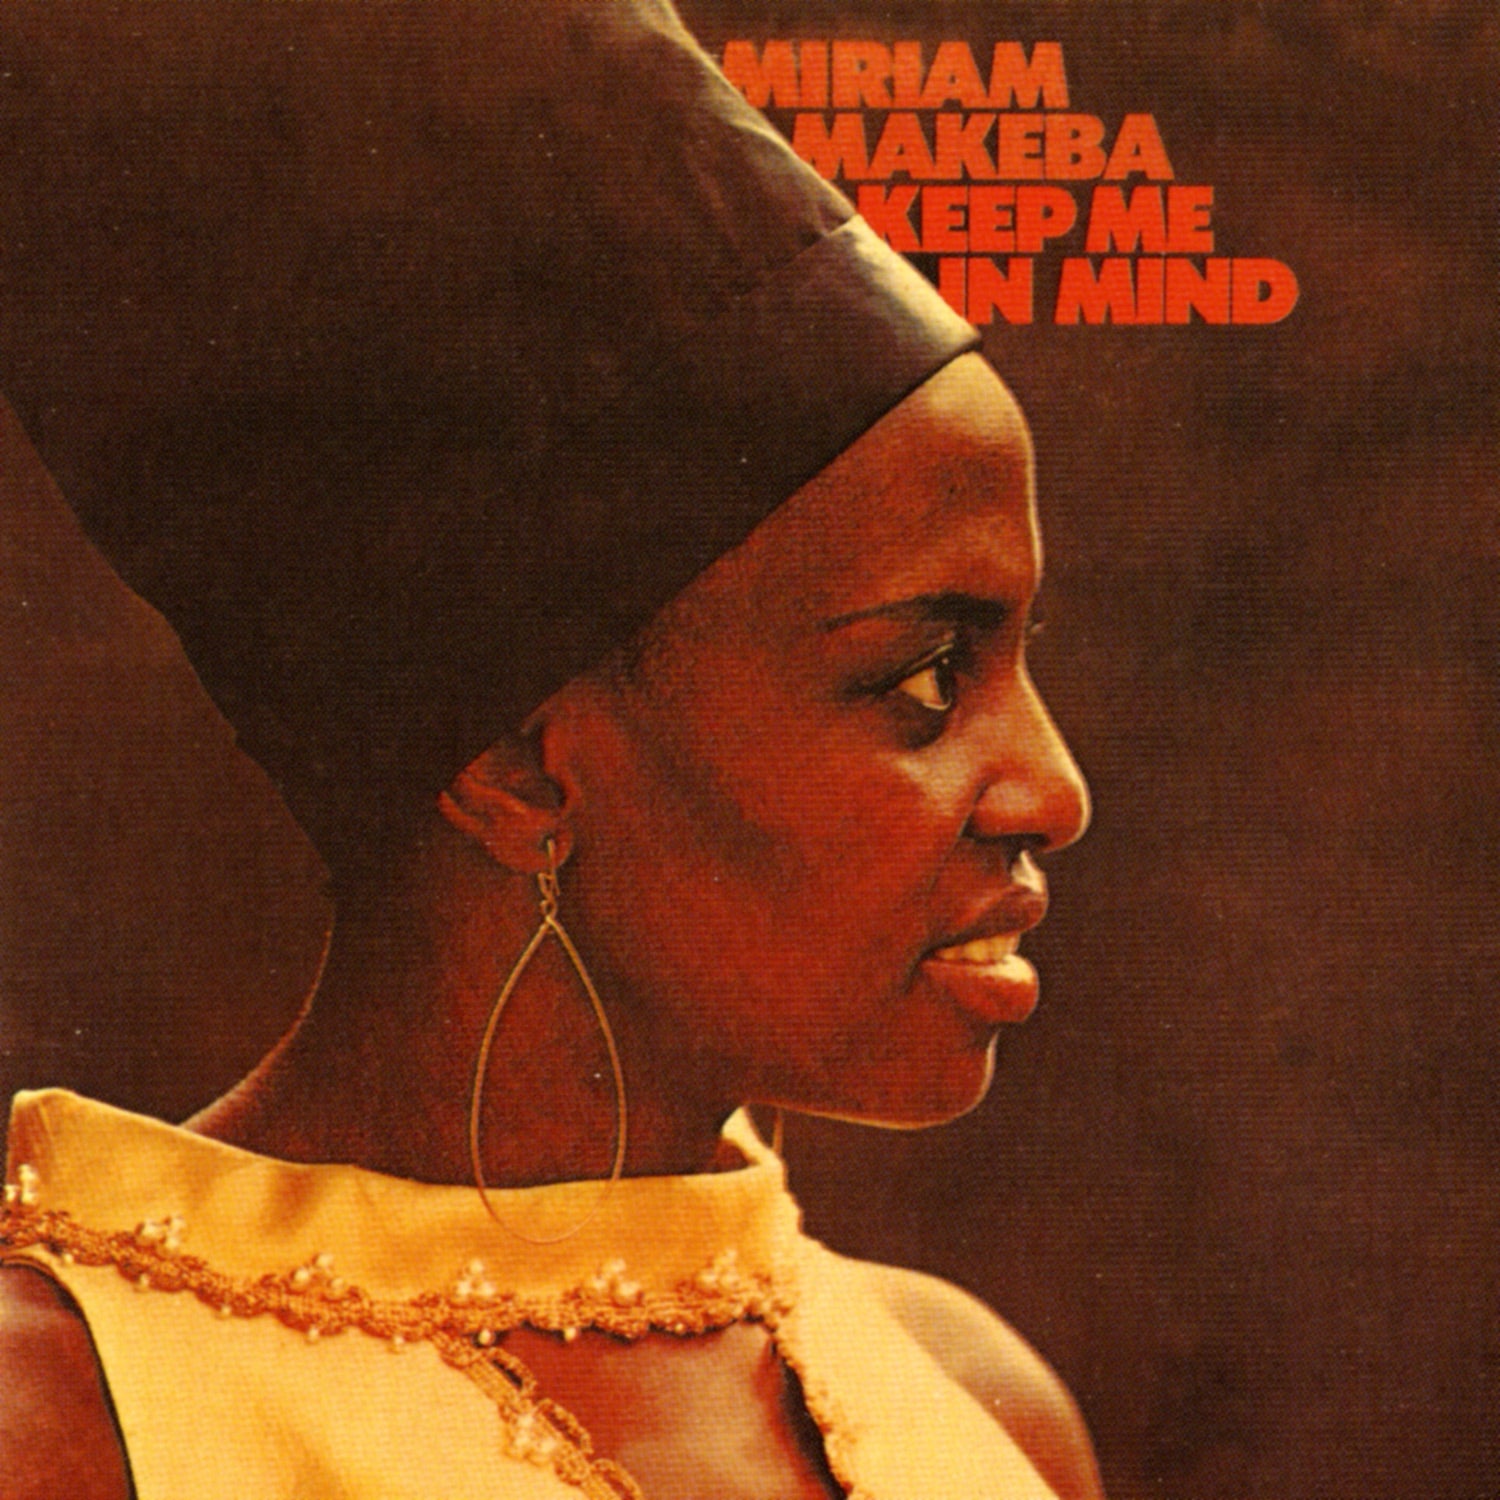 MIRIAM MAKEBA - Keep Me In Mind (Remastered) - LP - Vinyl